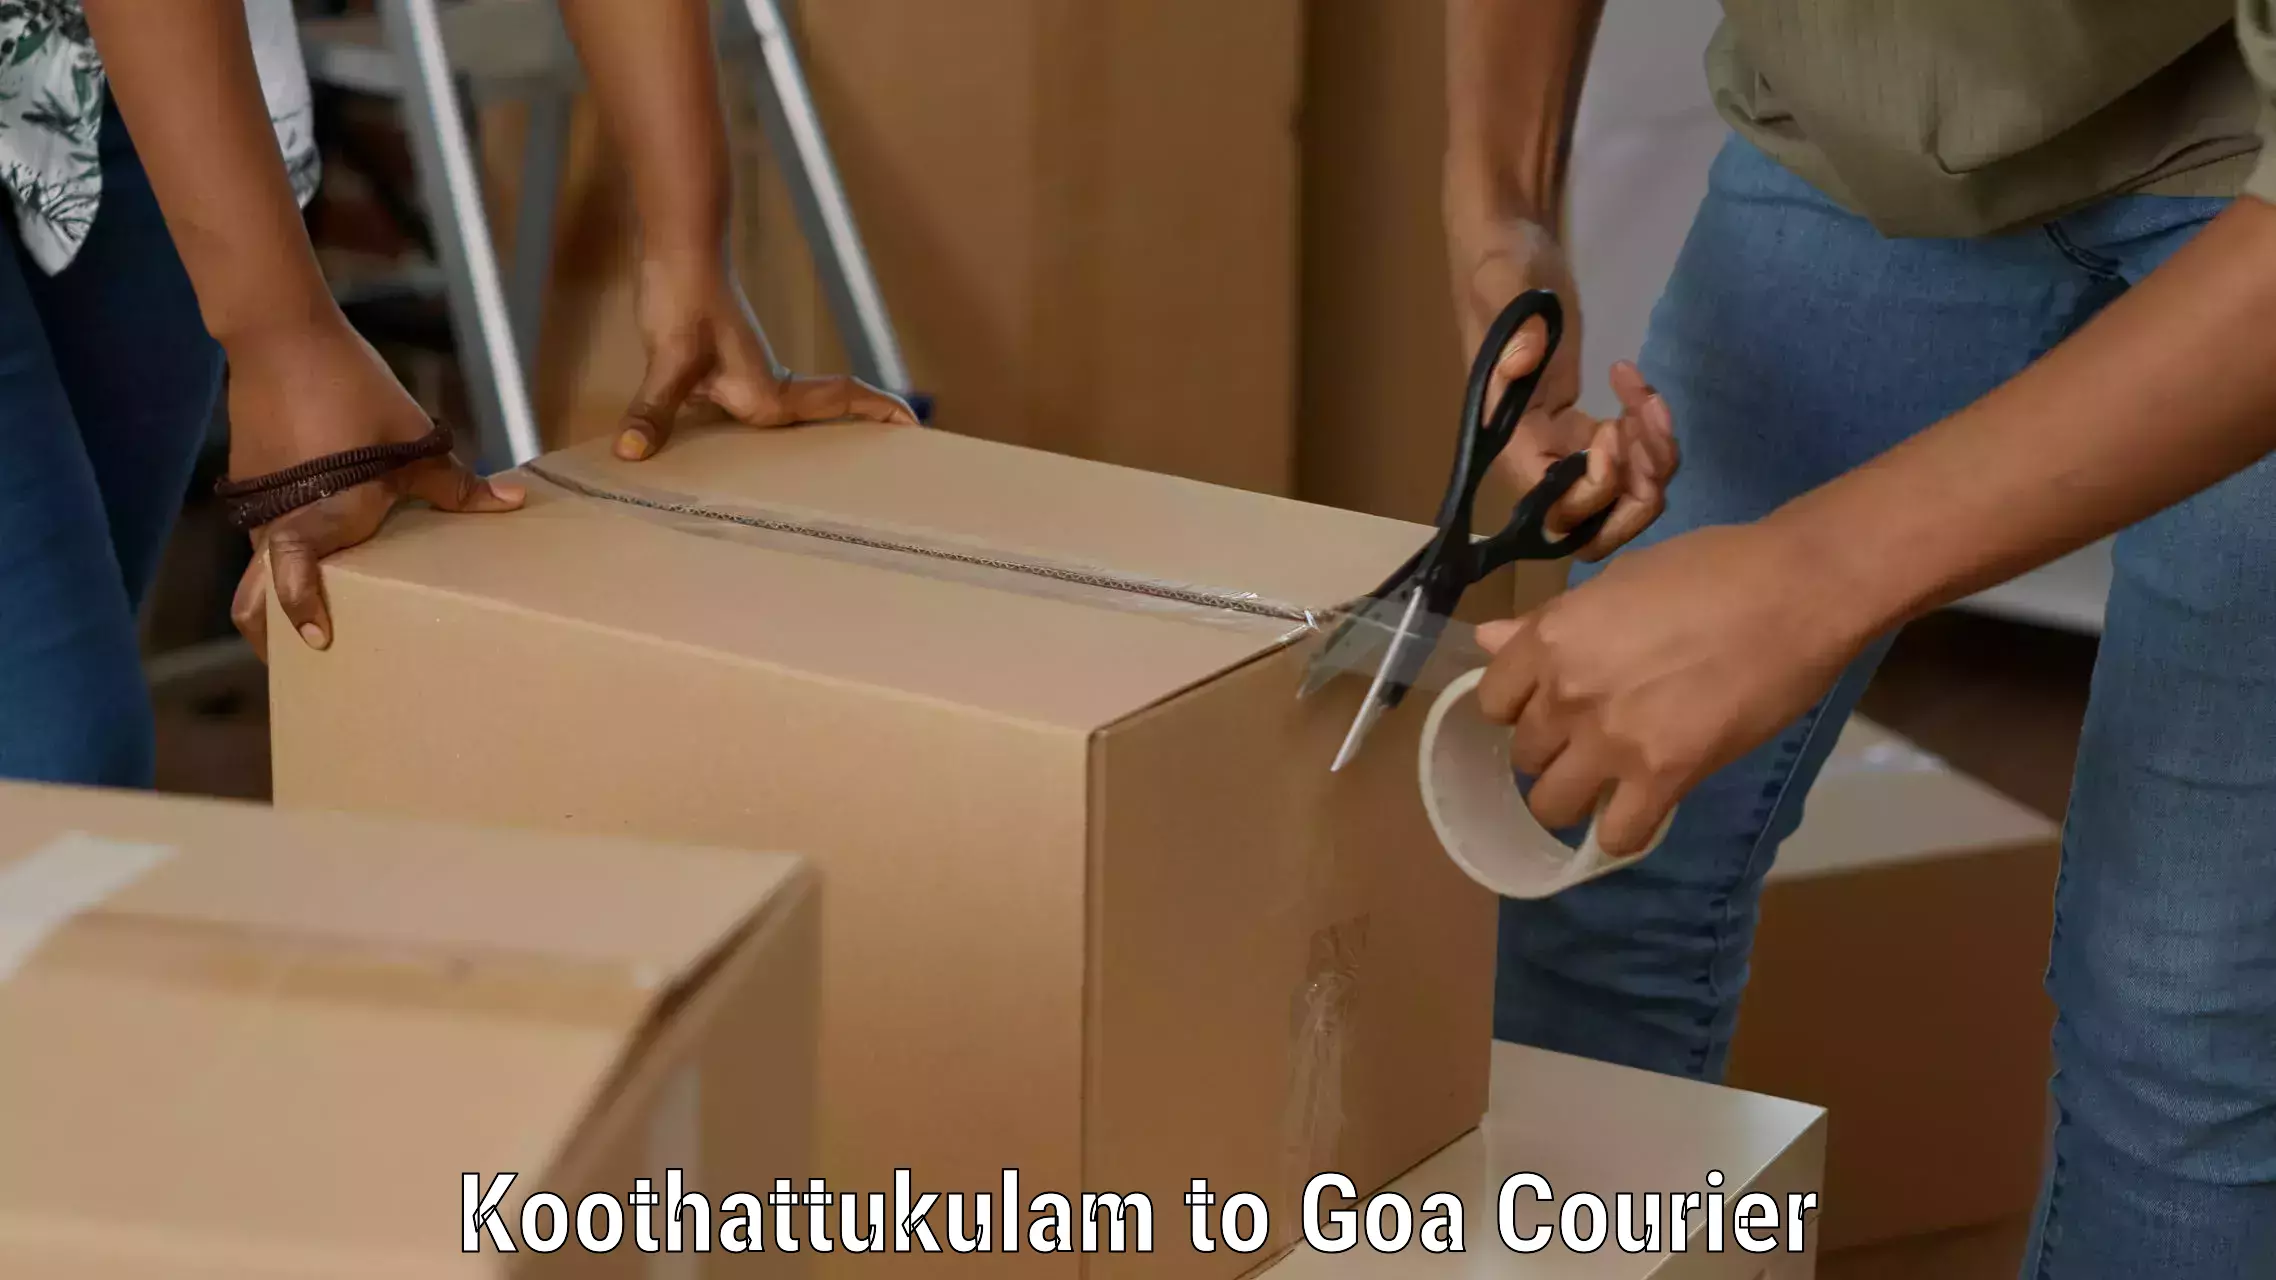 Nationwide shipping capabilities Koothattukulam to NIT Goa